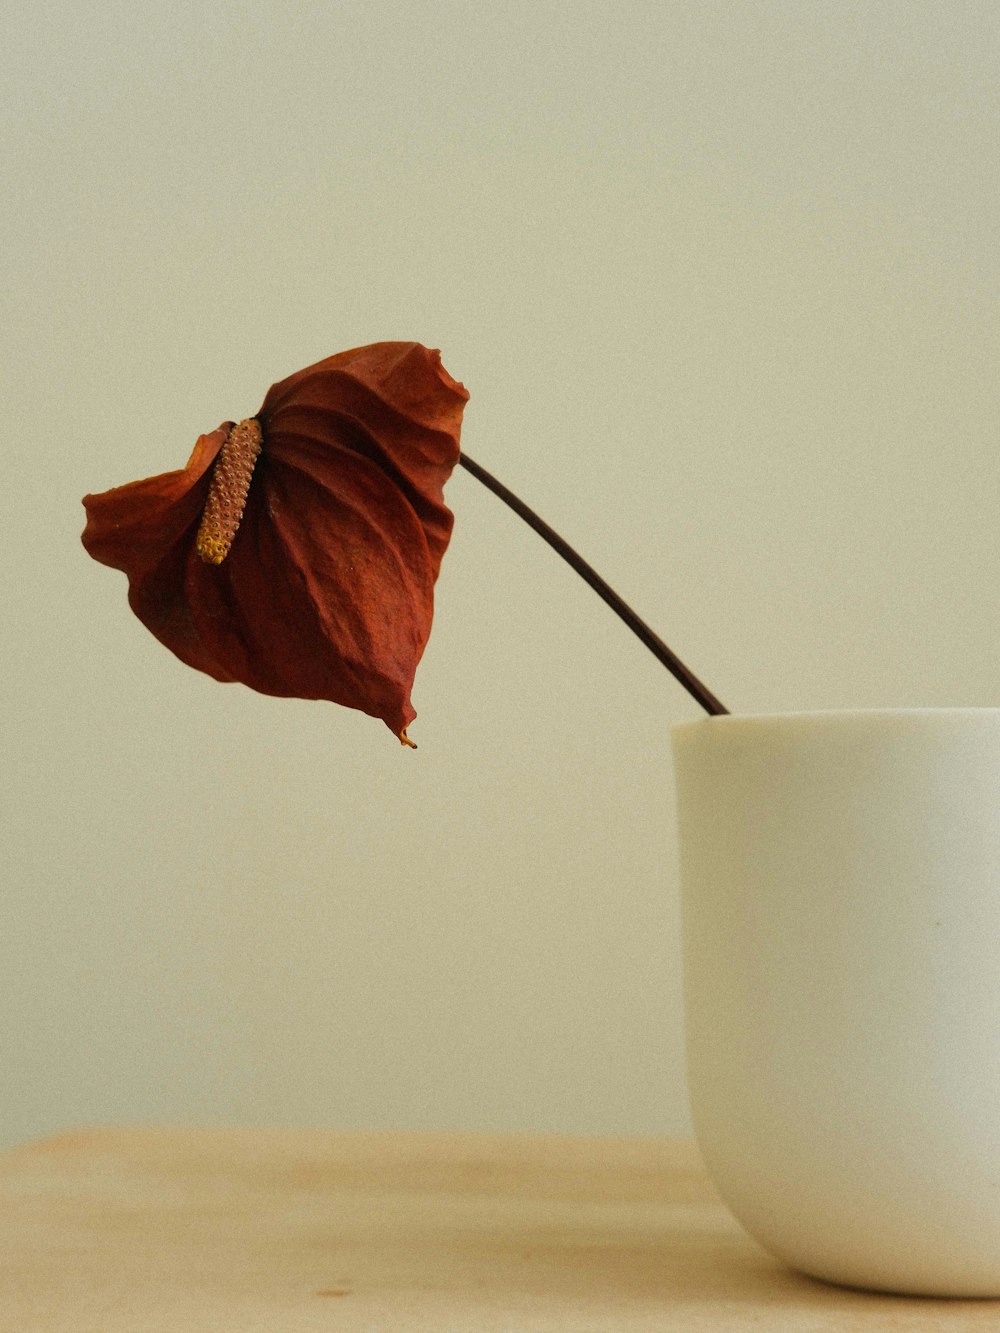 테이블에 하얀 컵에 하나의 꽃